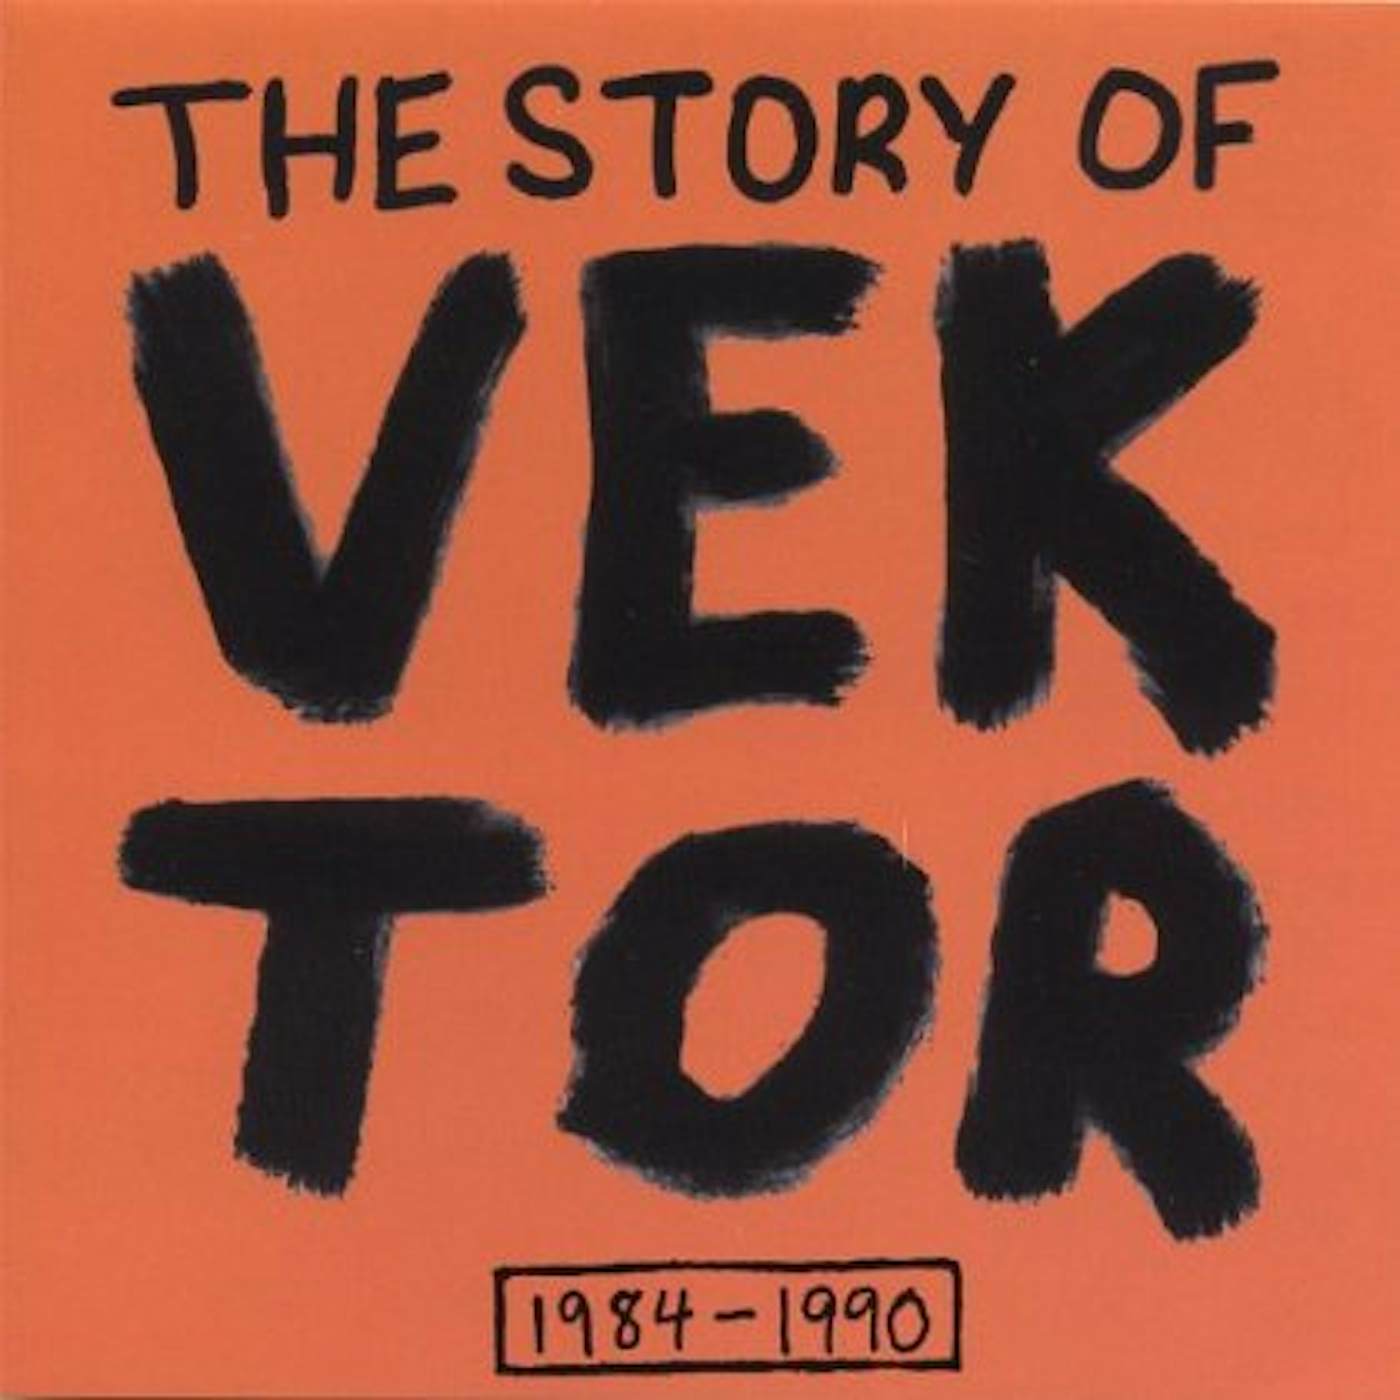 STORY OF VEKTOR CD